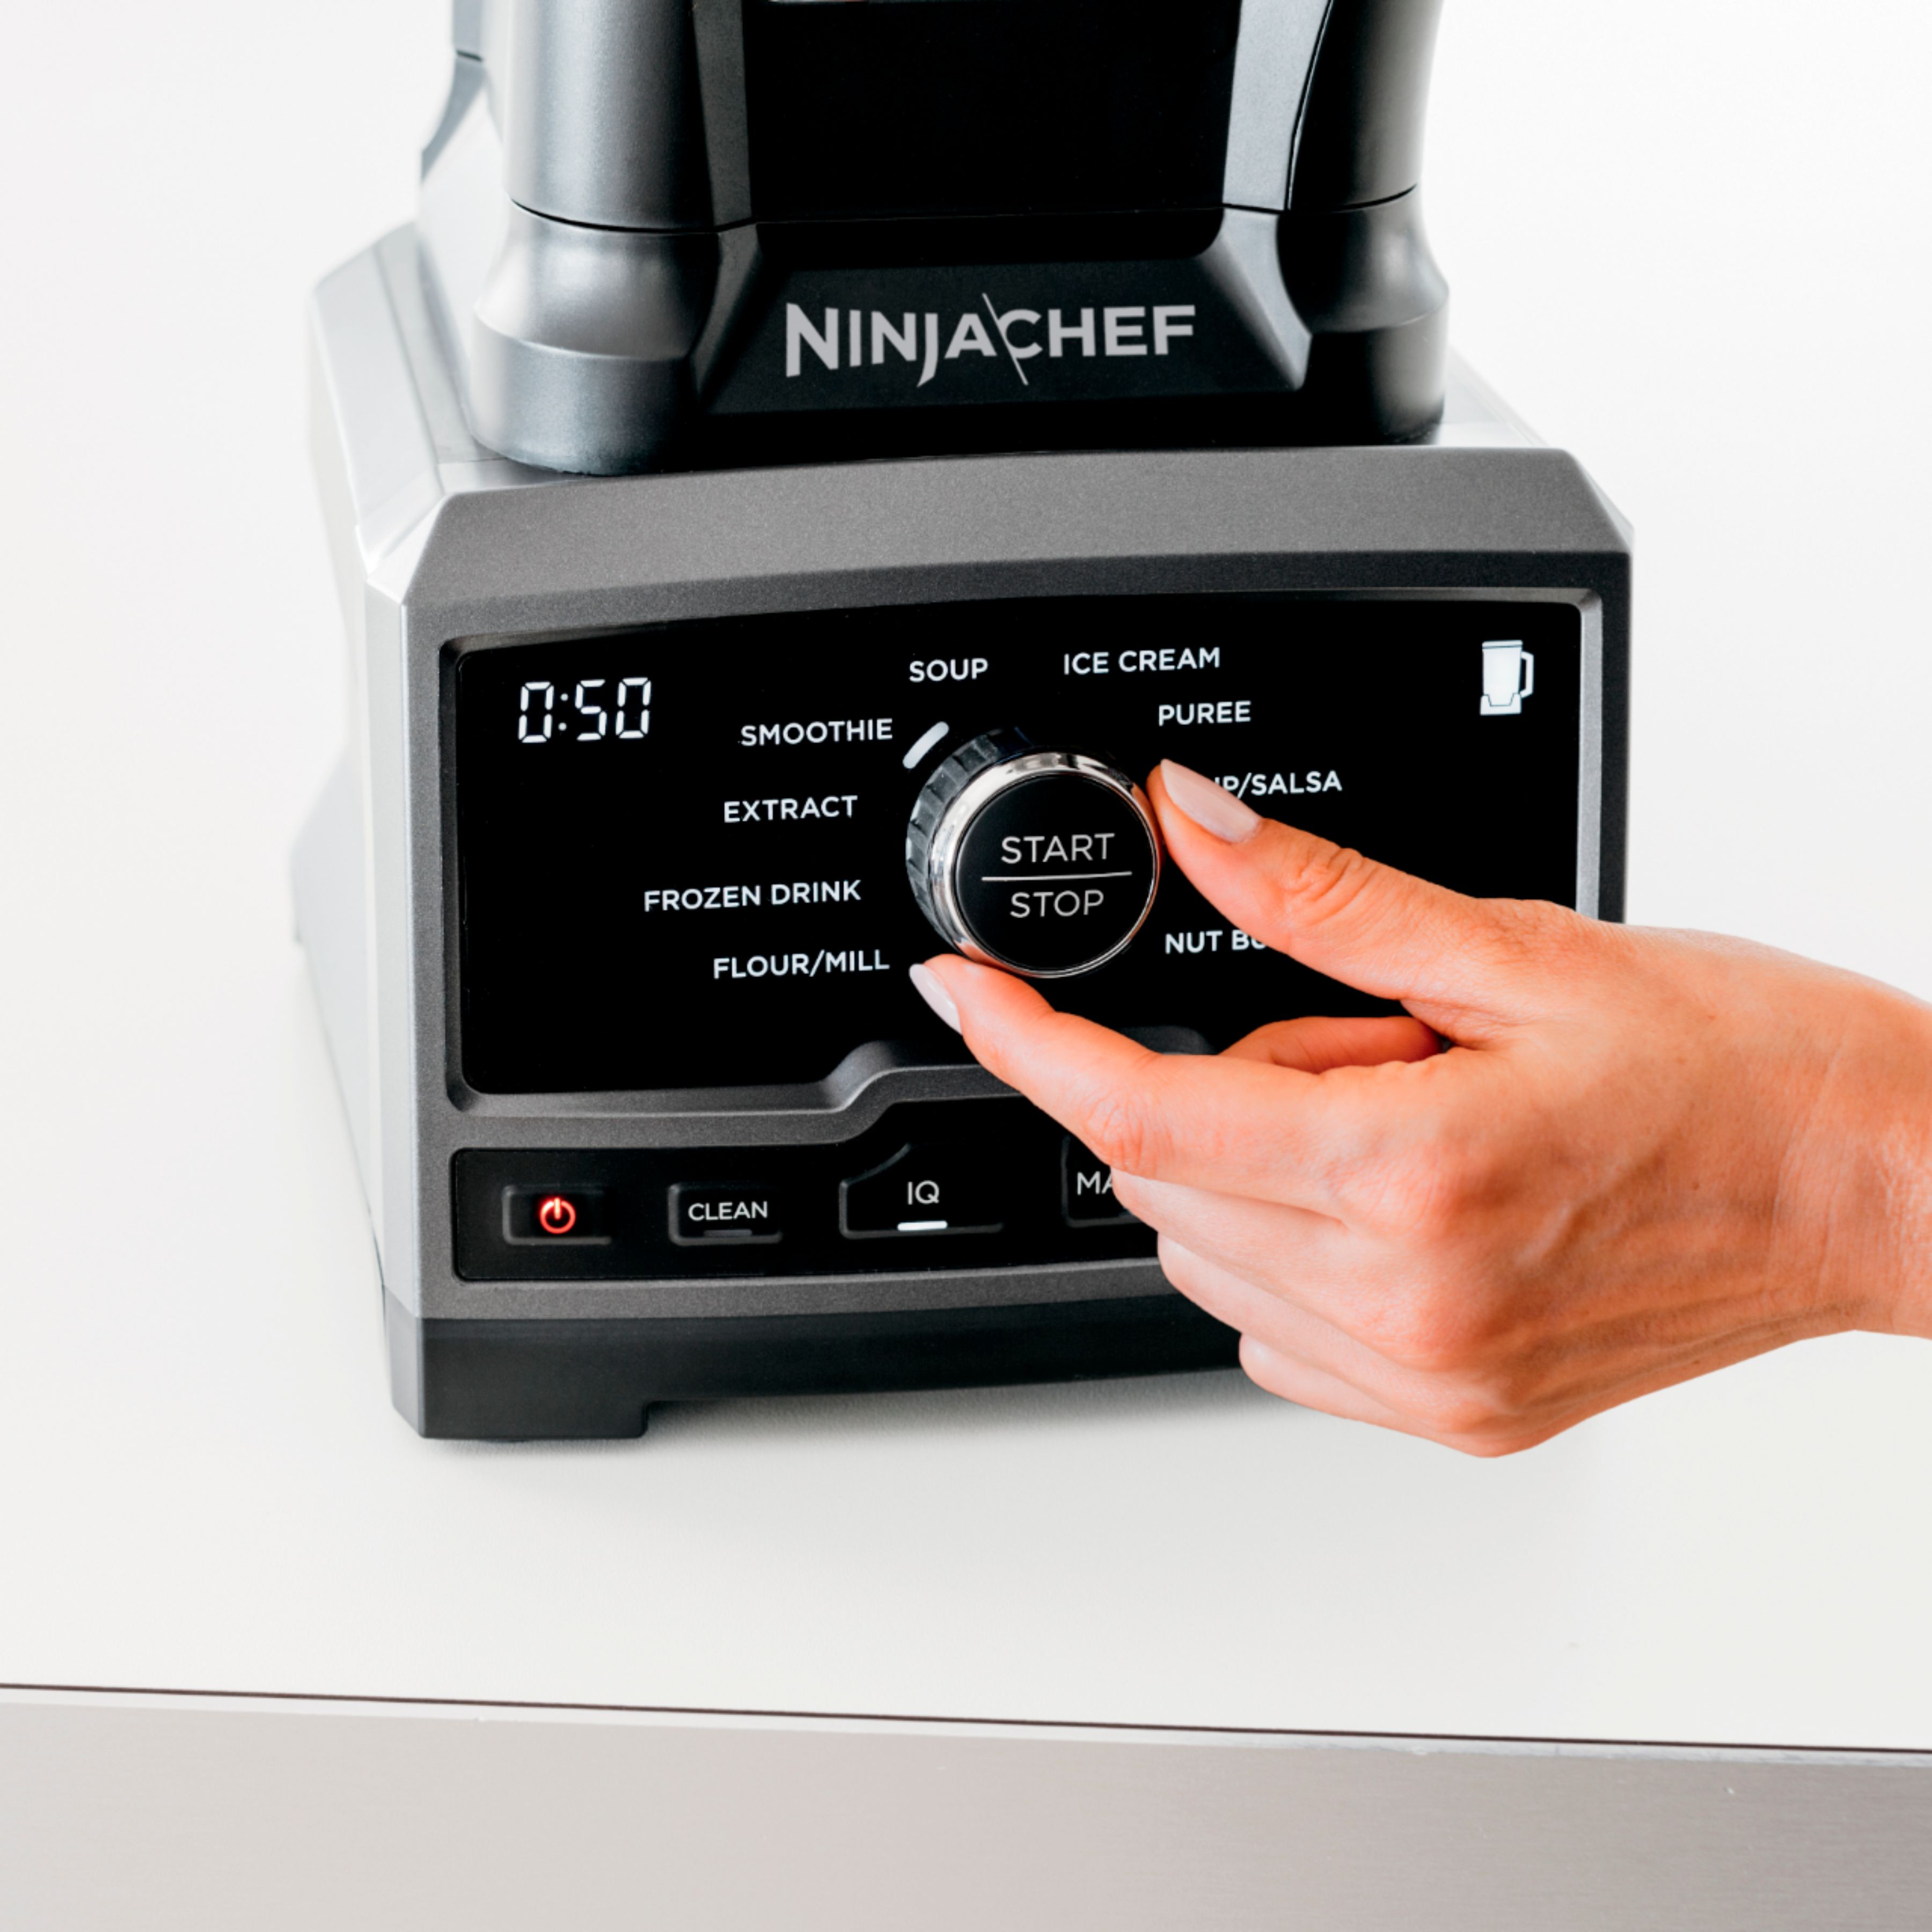 Ninja 72-oz Black 1500-Watt Pulse Control Blender